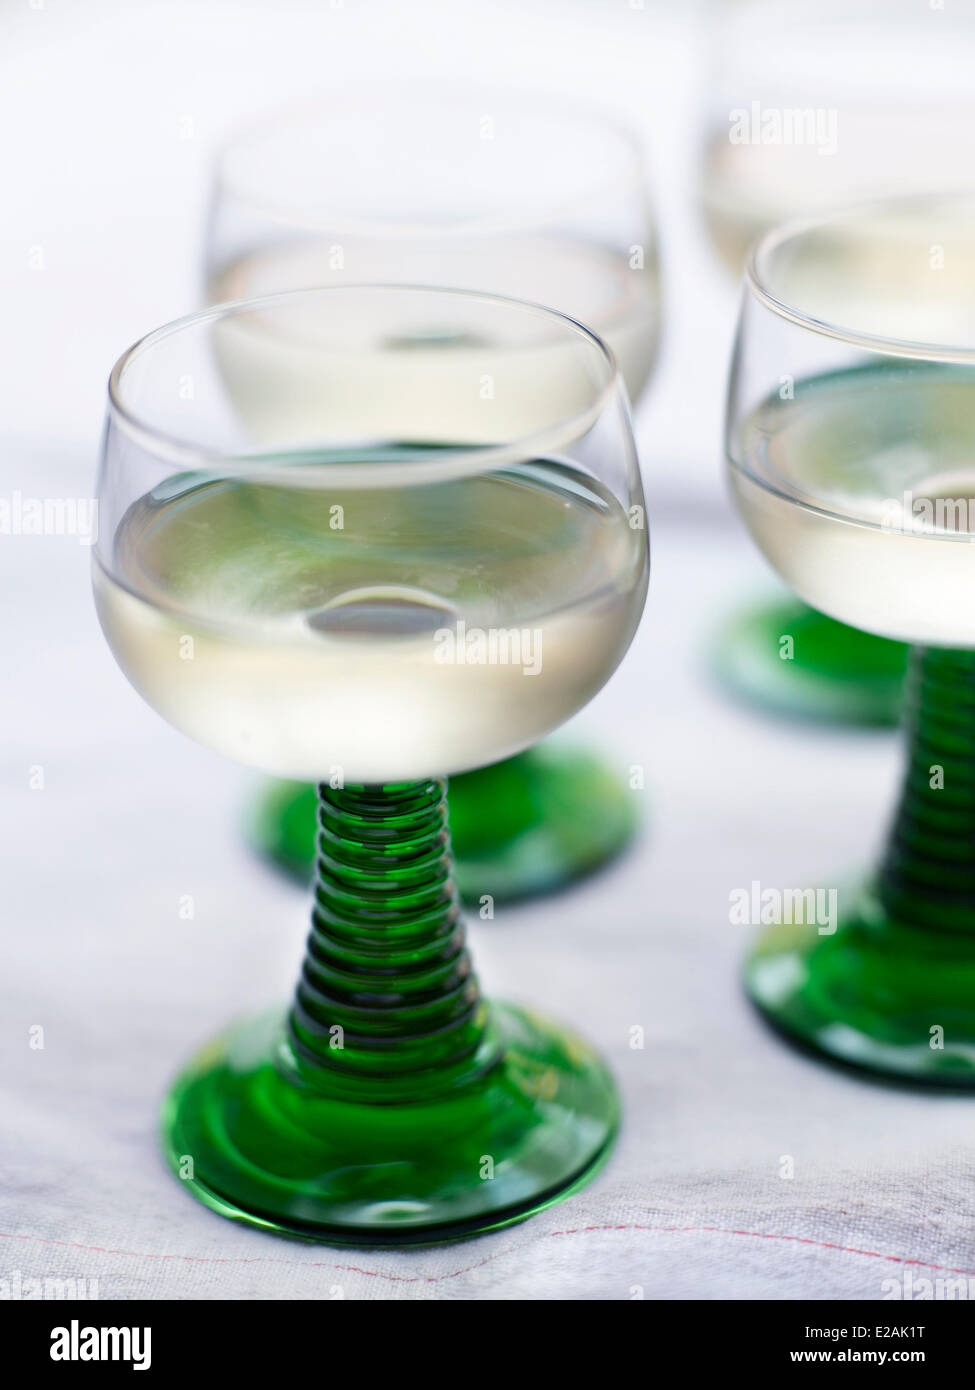 France, Alsace, caractéristique : Felder's Alsace, verres de vin blanc d' Alsace Photo Stock - Alamy